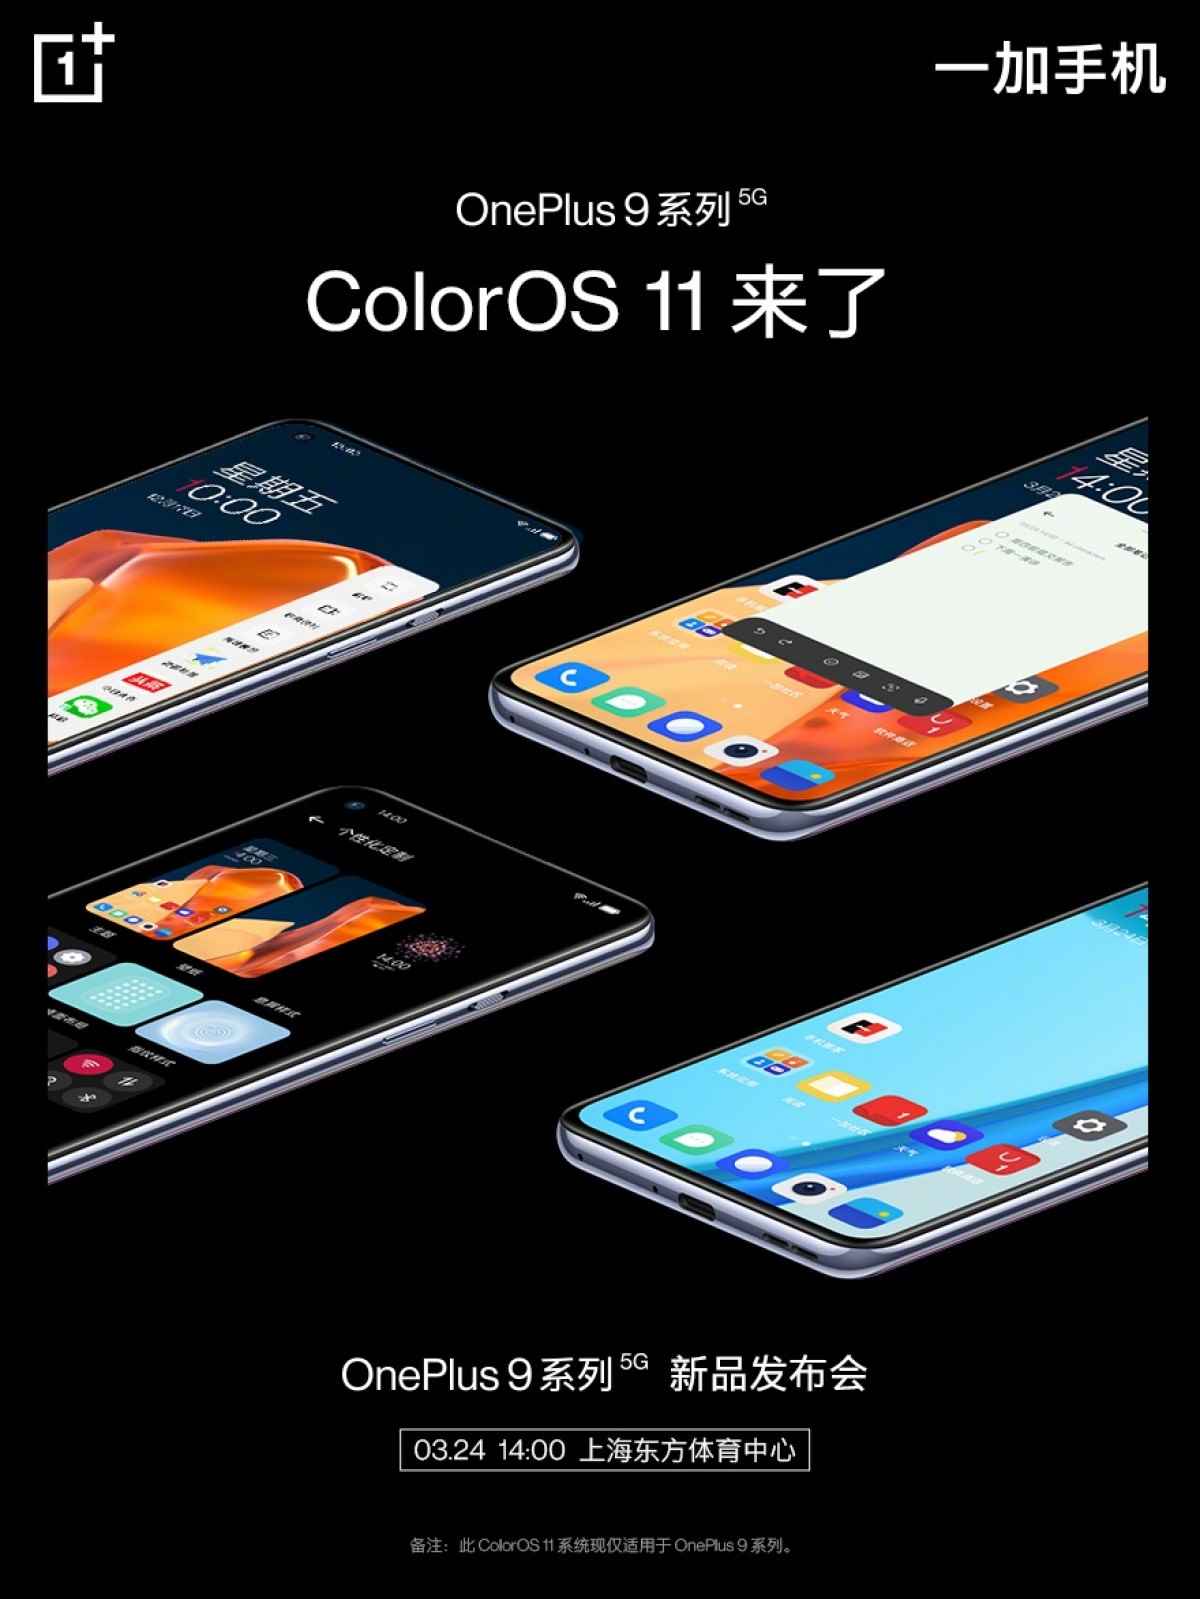 عرضه سری وان پلاس ۹ با ColorOS ۱۱ در چین